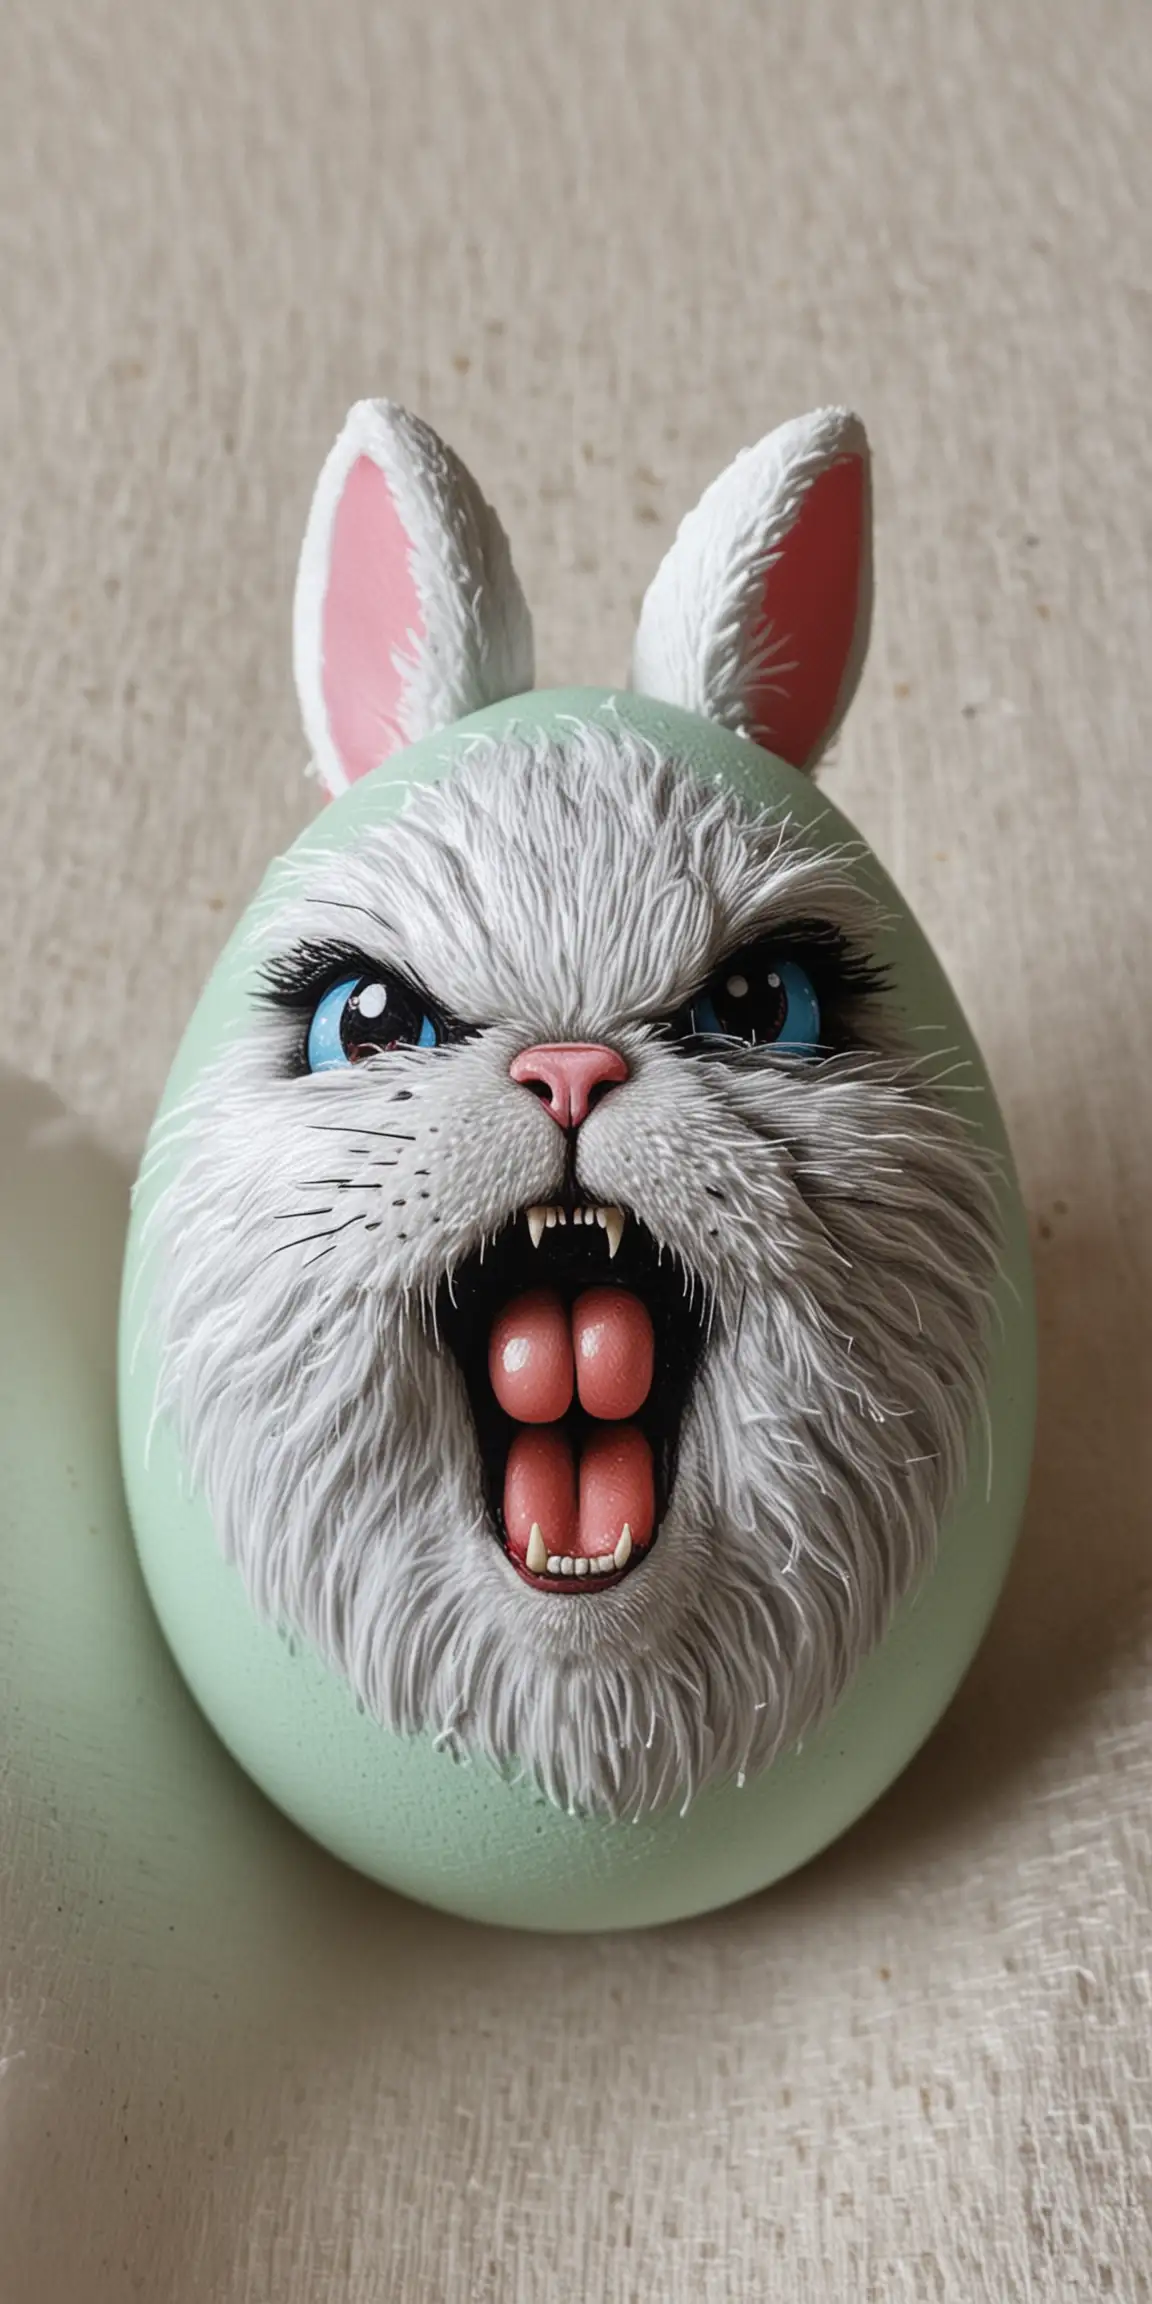 Furious Rabbit Artwork Adorning Vibrant Easter Egg